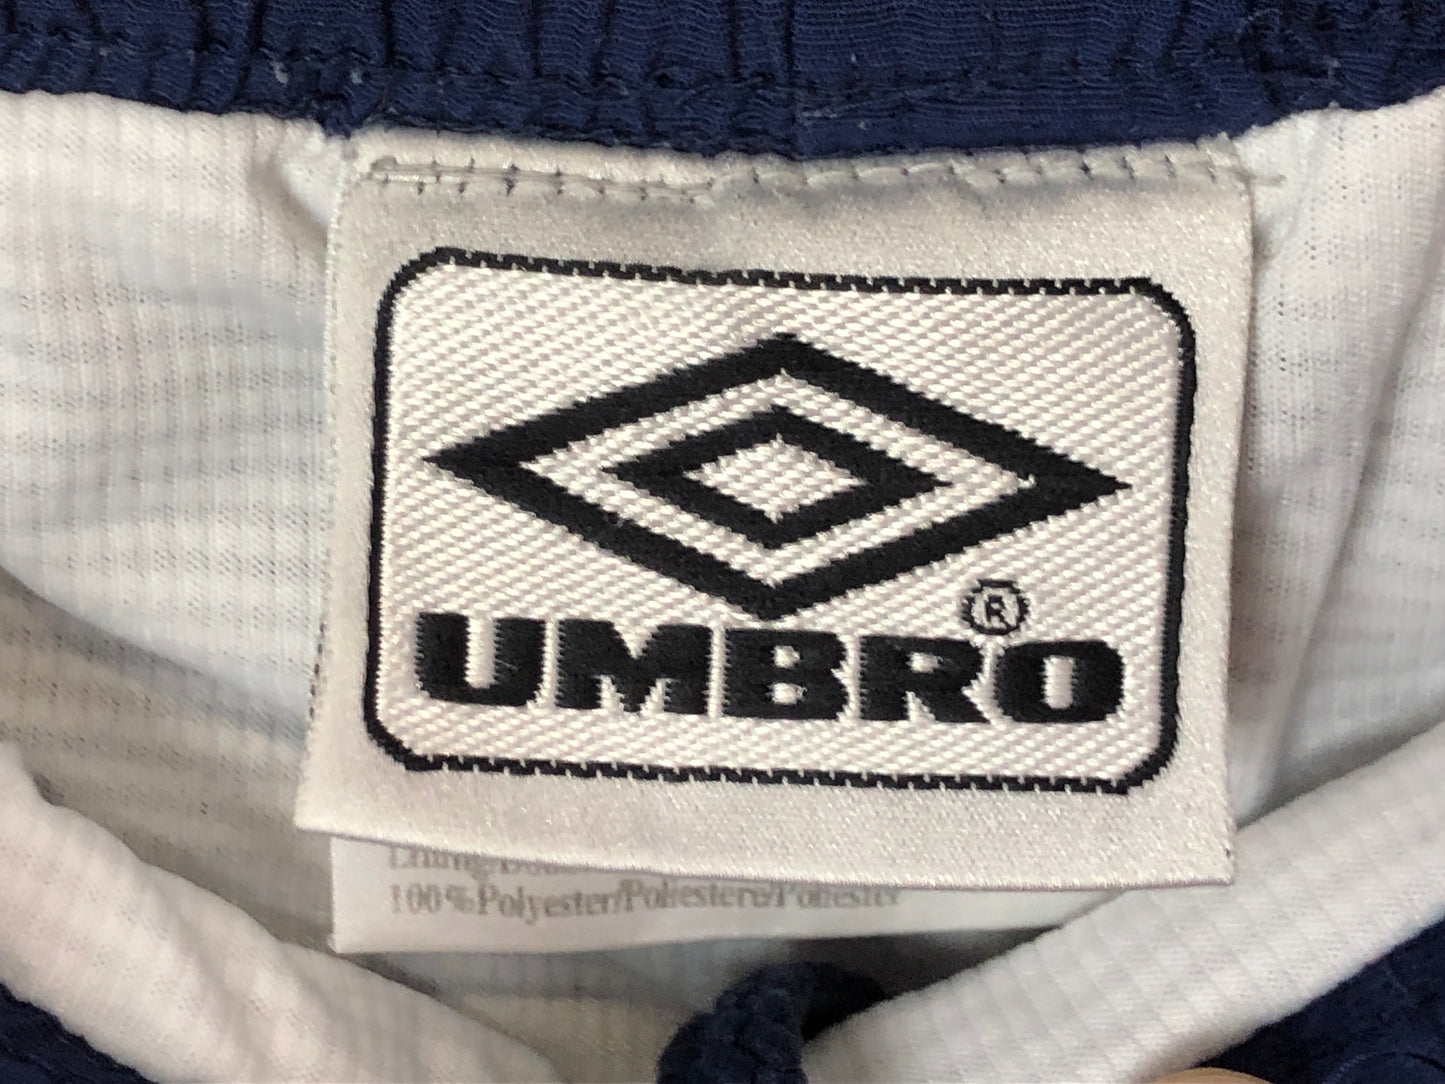 Umbro Vintage Men's Kids Sport Shorts - 10-12Y Navy Blue Nylon